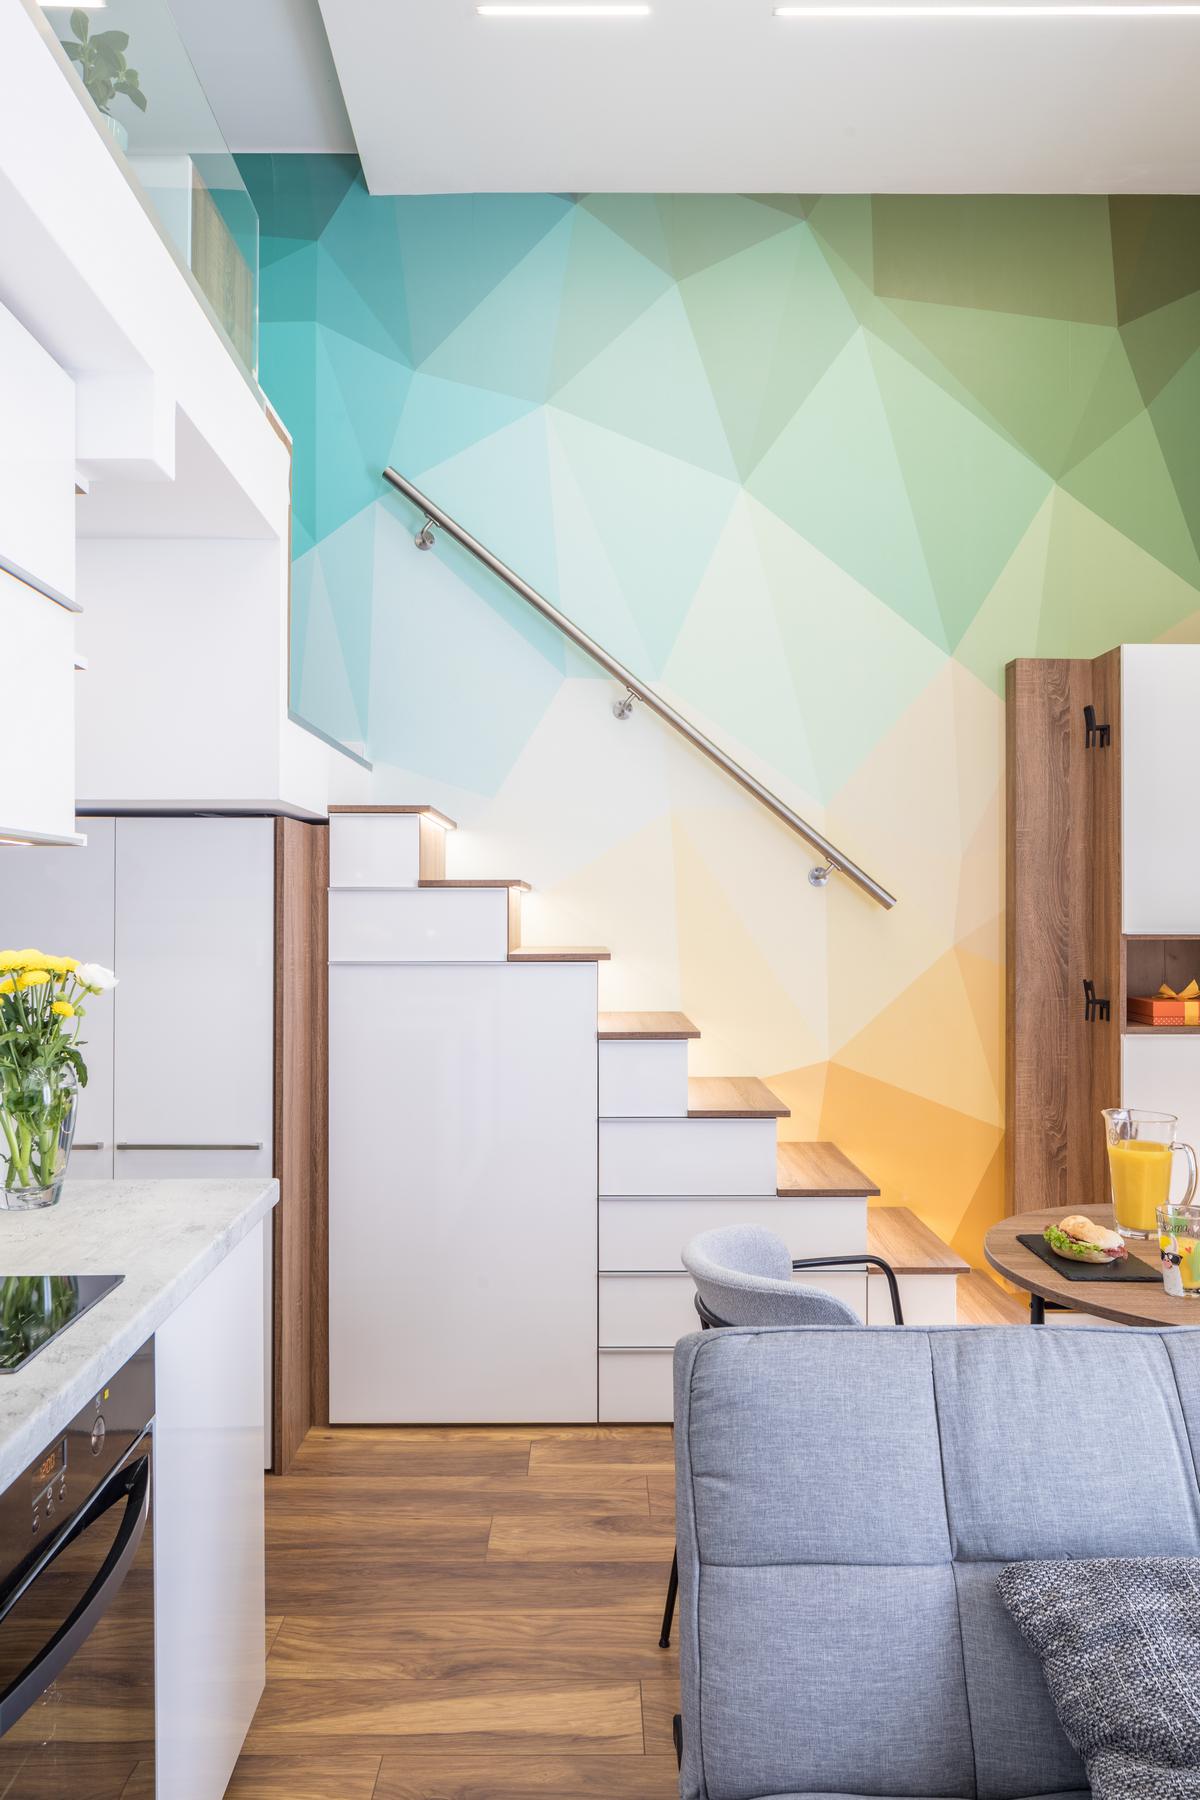 Tuy căn hộ có diện tích siêu nhỏ nhưng lại sở hữu trần nhà cao, đây là ưu điểm để nhà thiết kế nội thất tận dụng để thiết lập phòng ngủ trên gác lửng. Bức tường khu vực này được trang trí bằng họa tiết hình học nhiều màu pastel cam, xanh,... nổi bật.